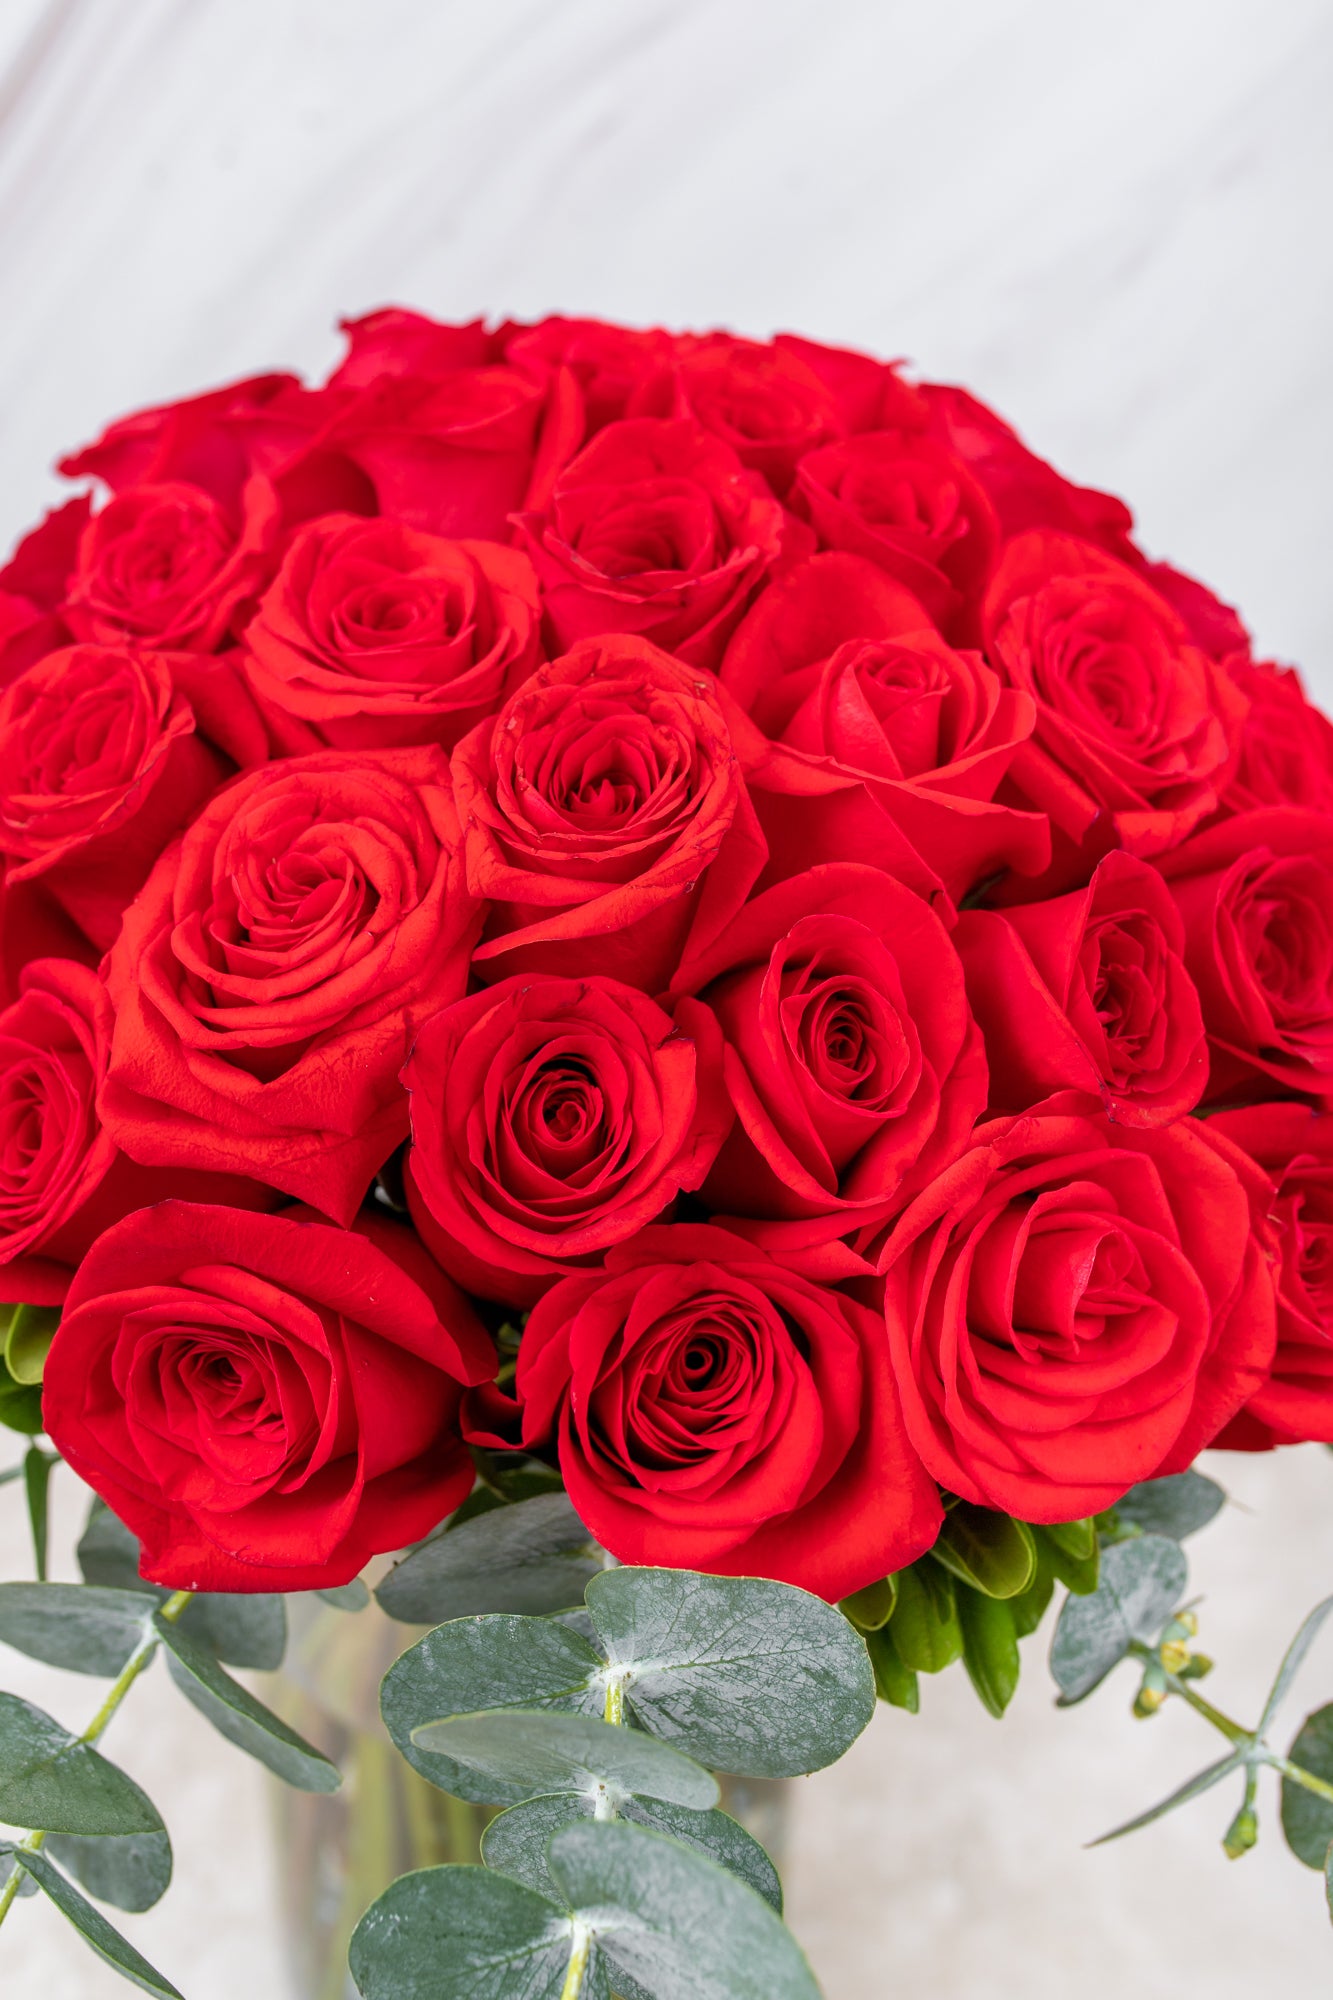 Envía Flores Ramos de Rosas a Domicilio | Ramos de Rosas Rojas a Domicilio  – Verbena Flores | Flores a Domicilio en Todo México